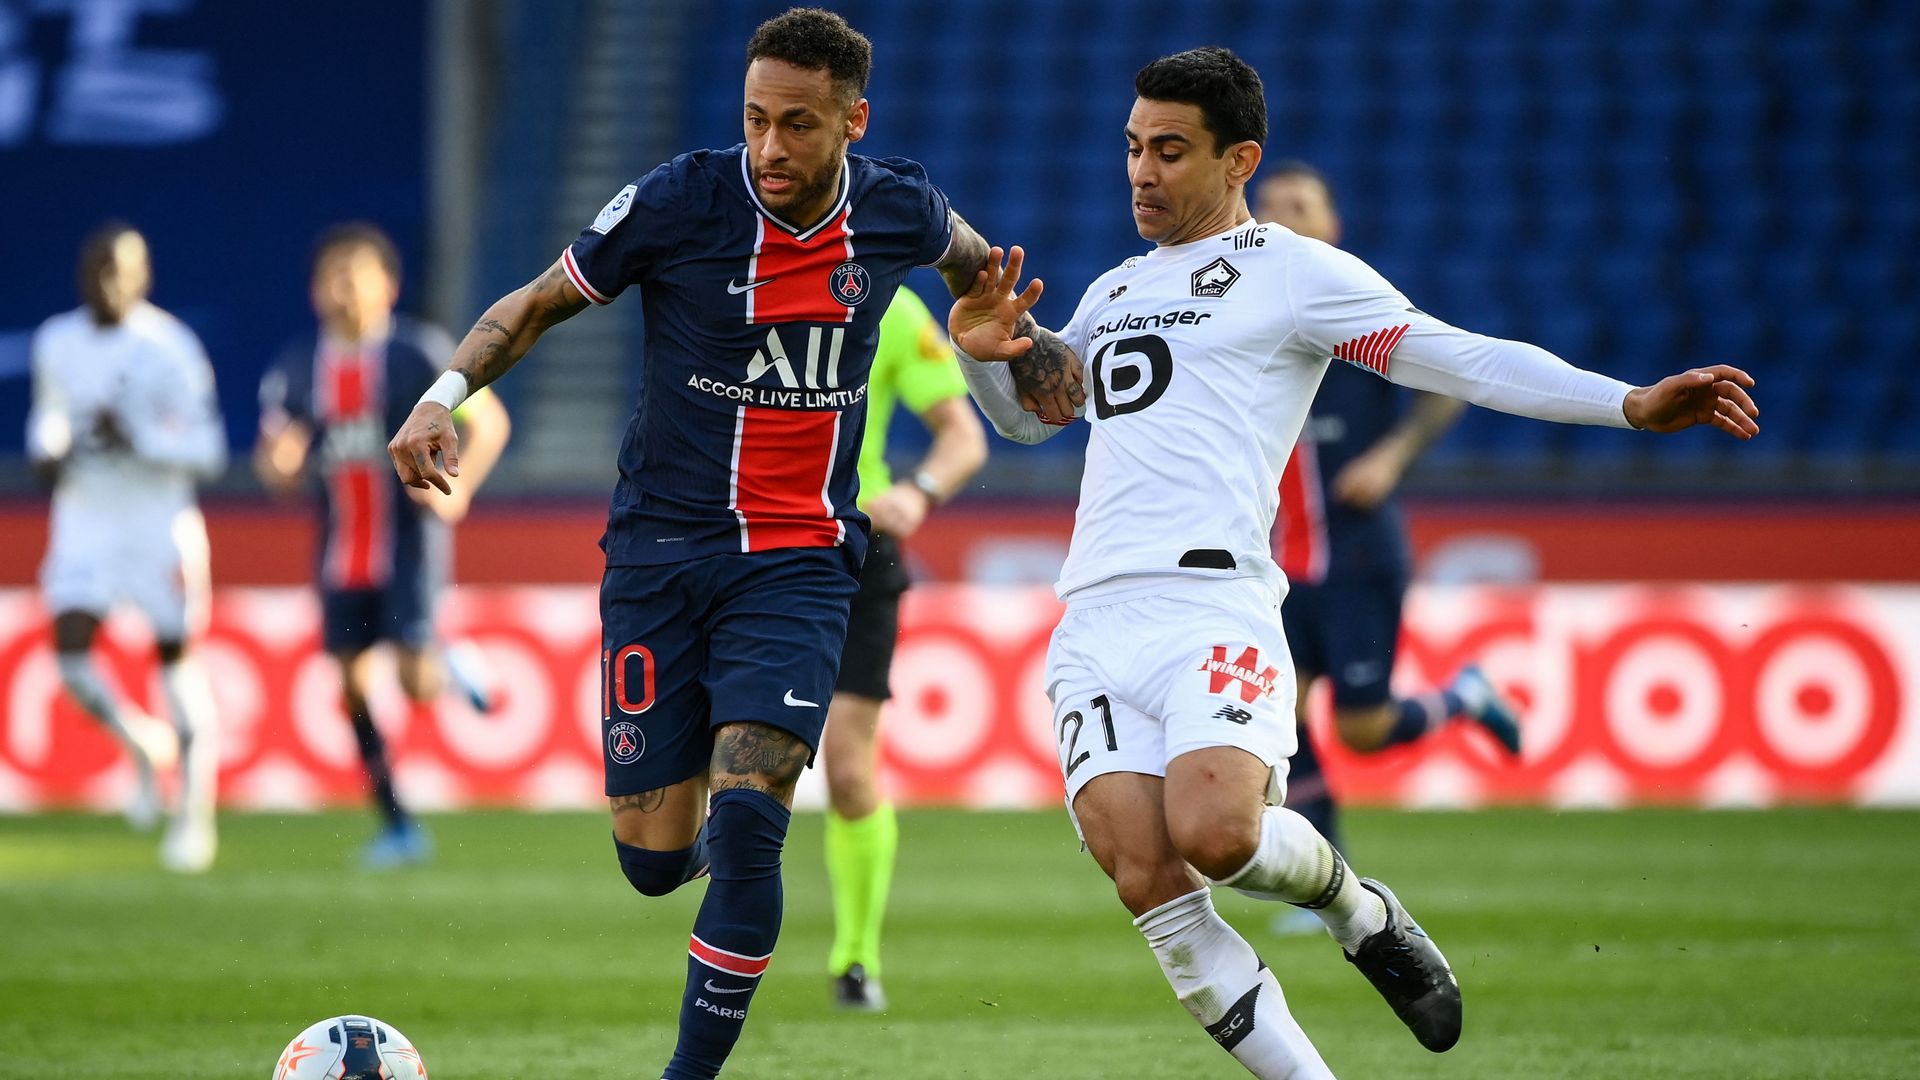 PSG-Lille (0-1) : Lille reprend la tête, Neymar expulsé